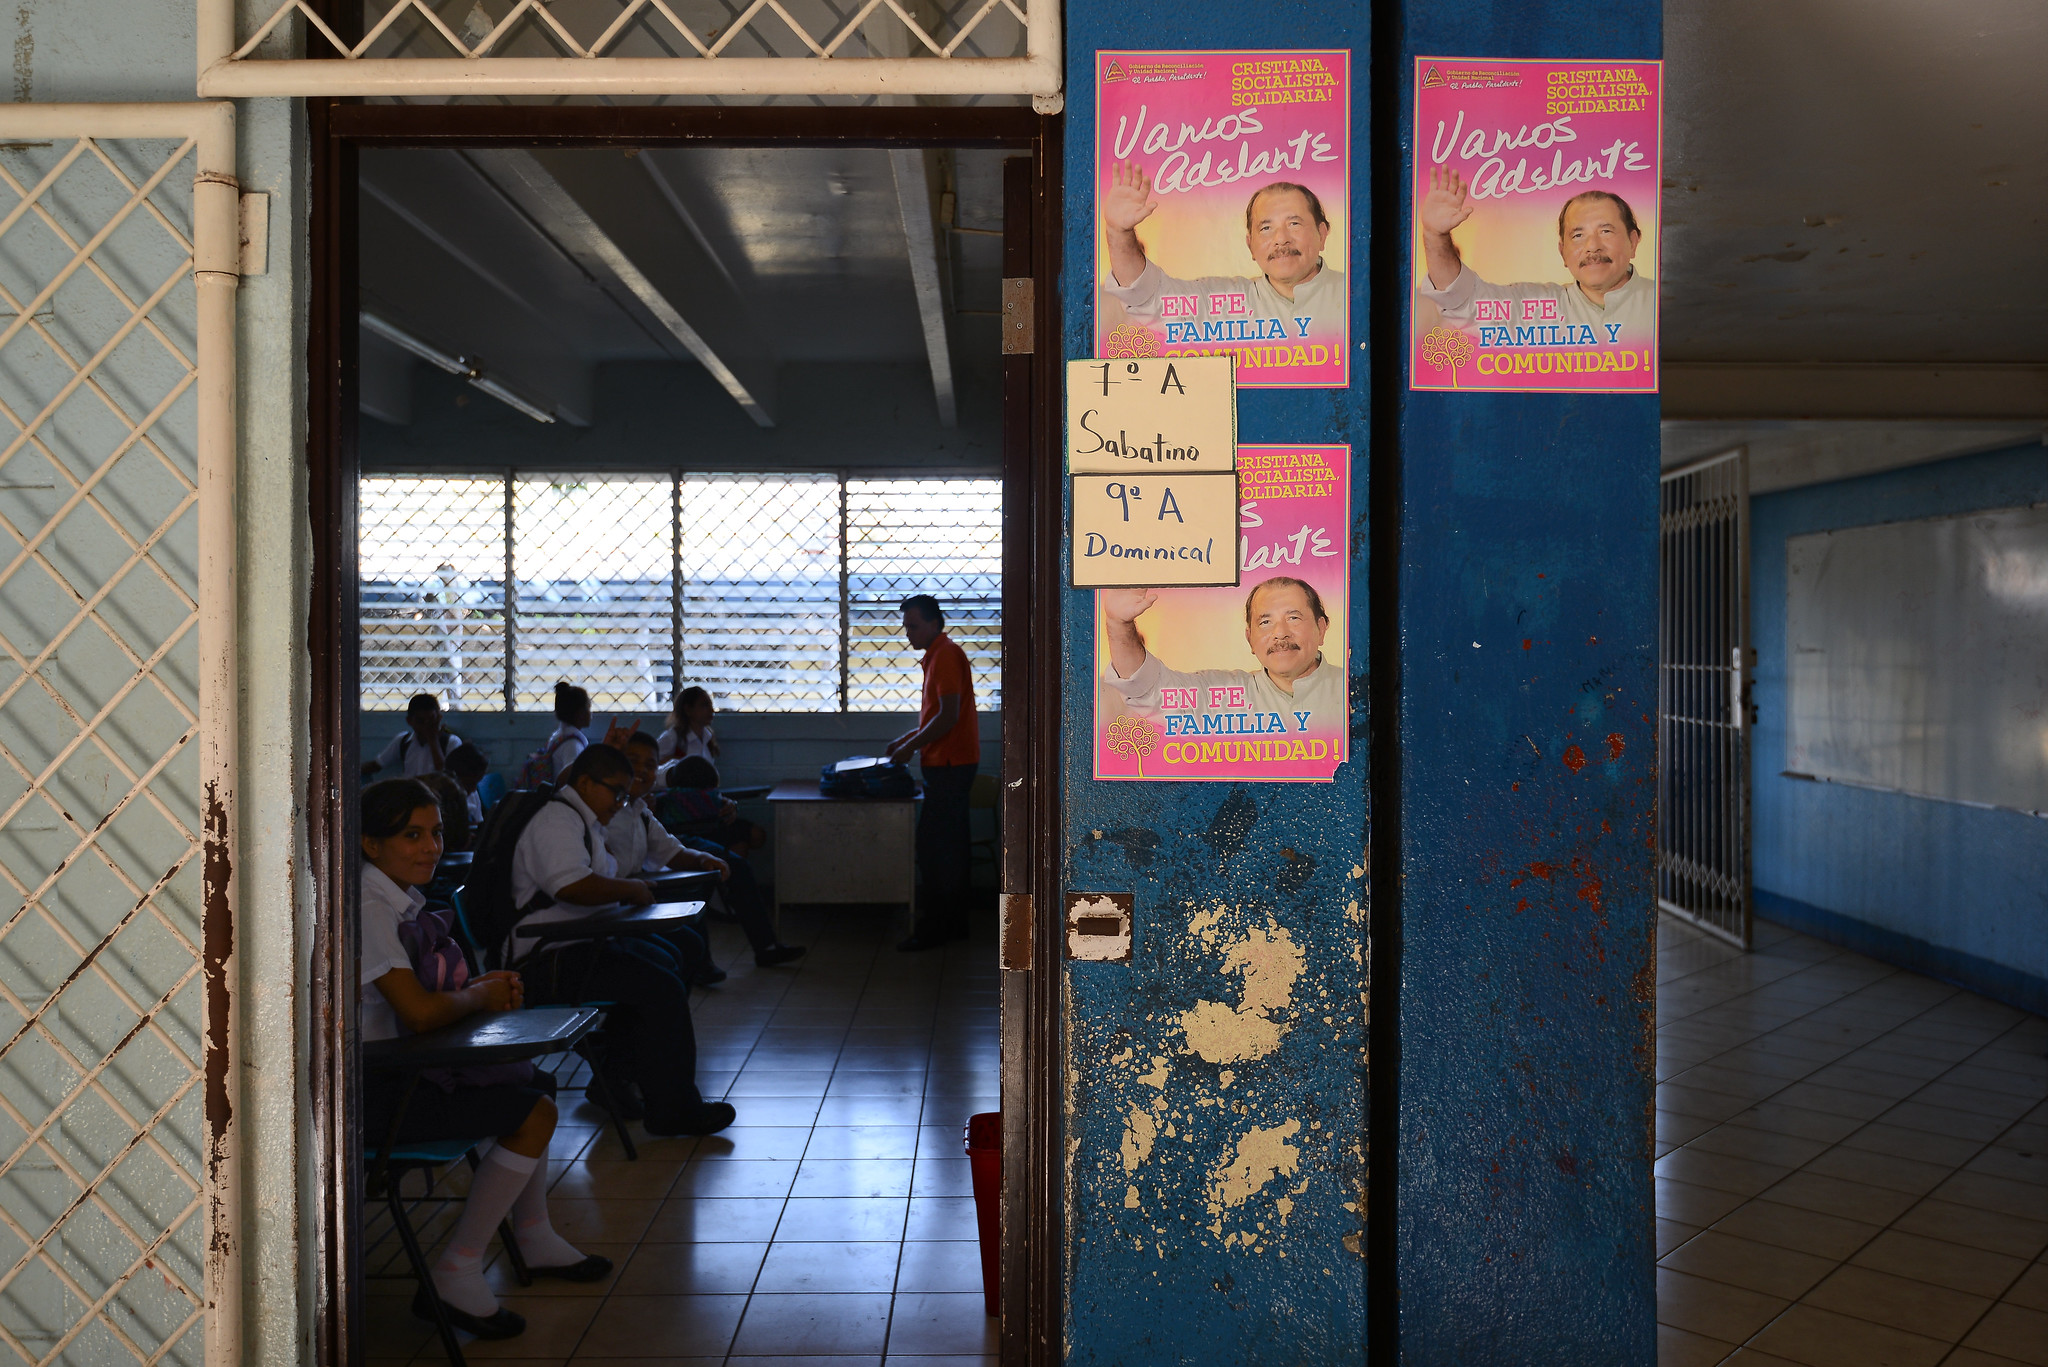 Educación aplazada en Nicaragua: Ortega “ponchó” el sistema educativo.